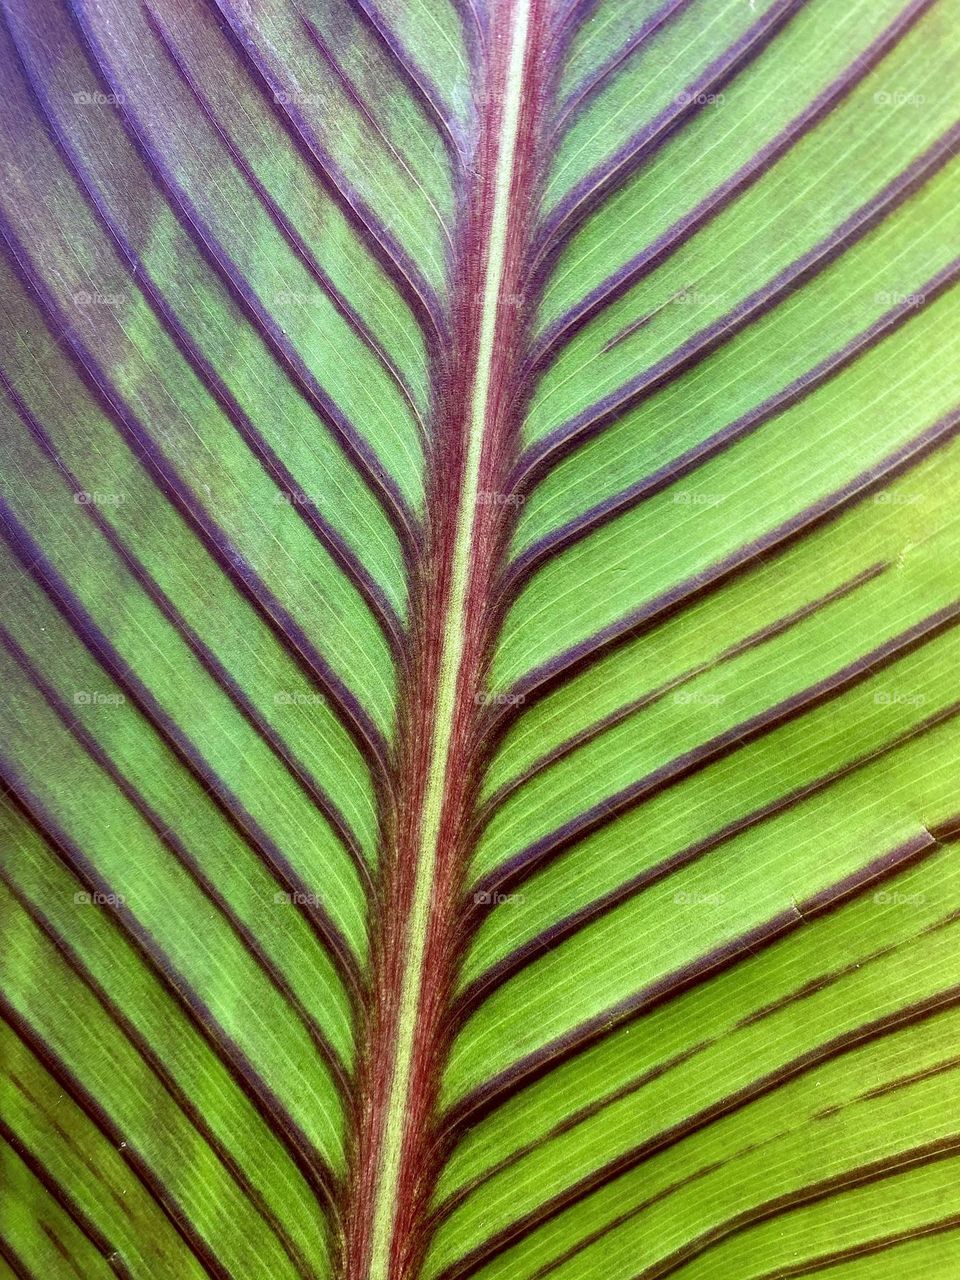 Leaf spine